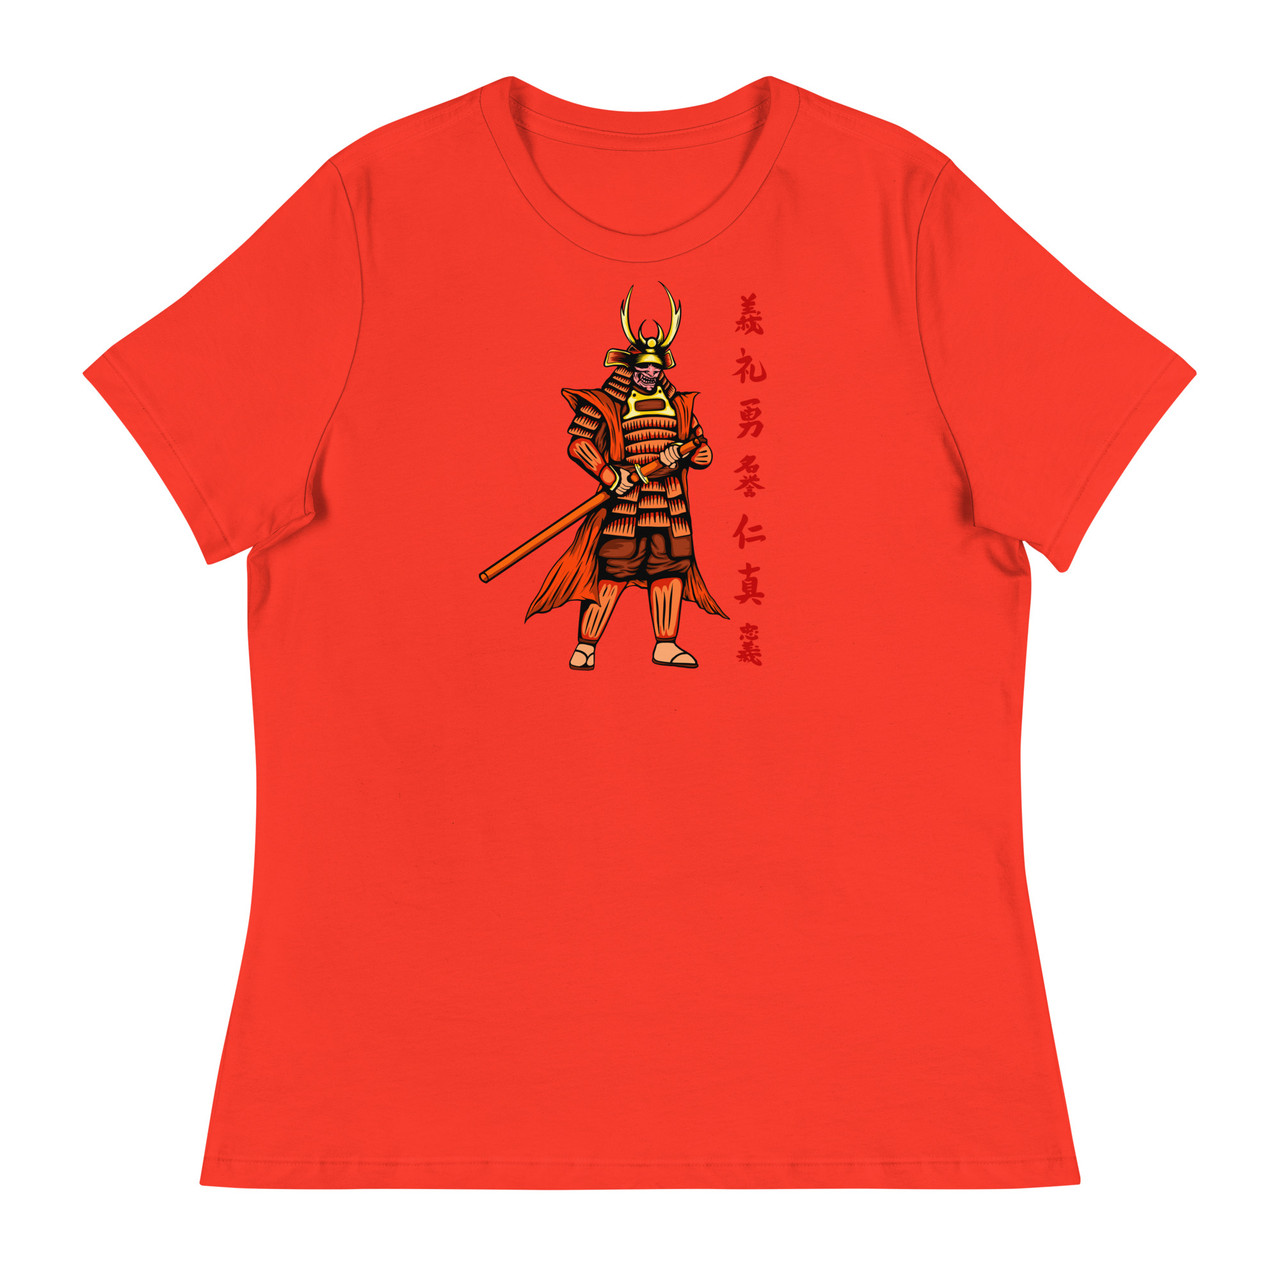 Samurai 2 Women's Relaxed T-Shirt - Bella + Canvas 6400 